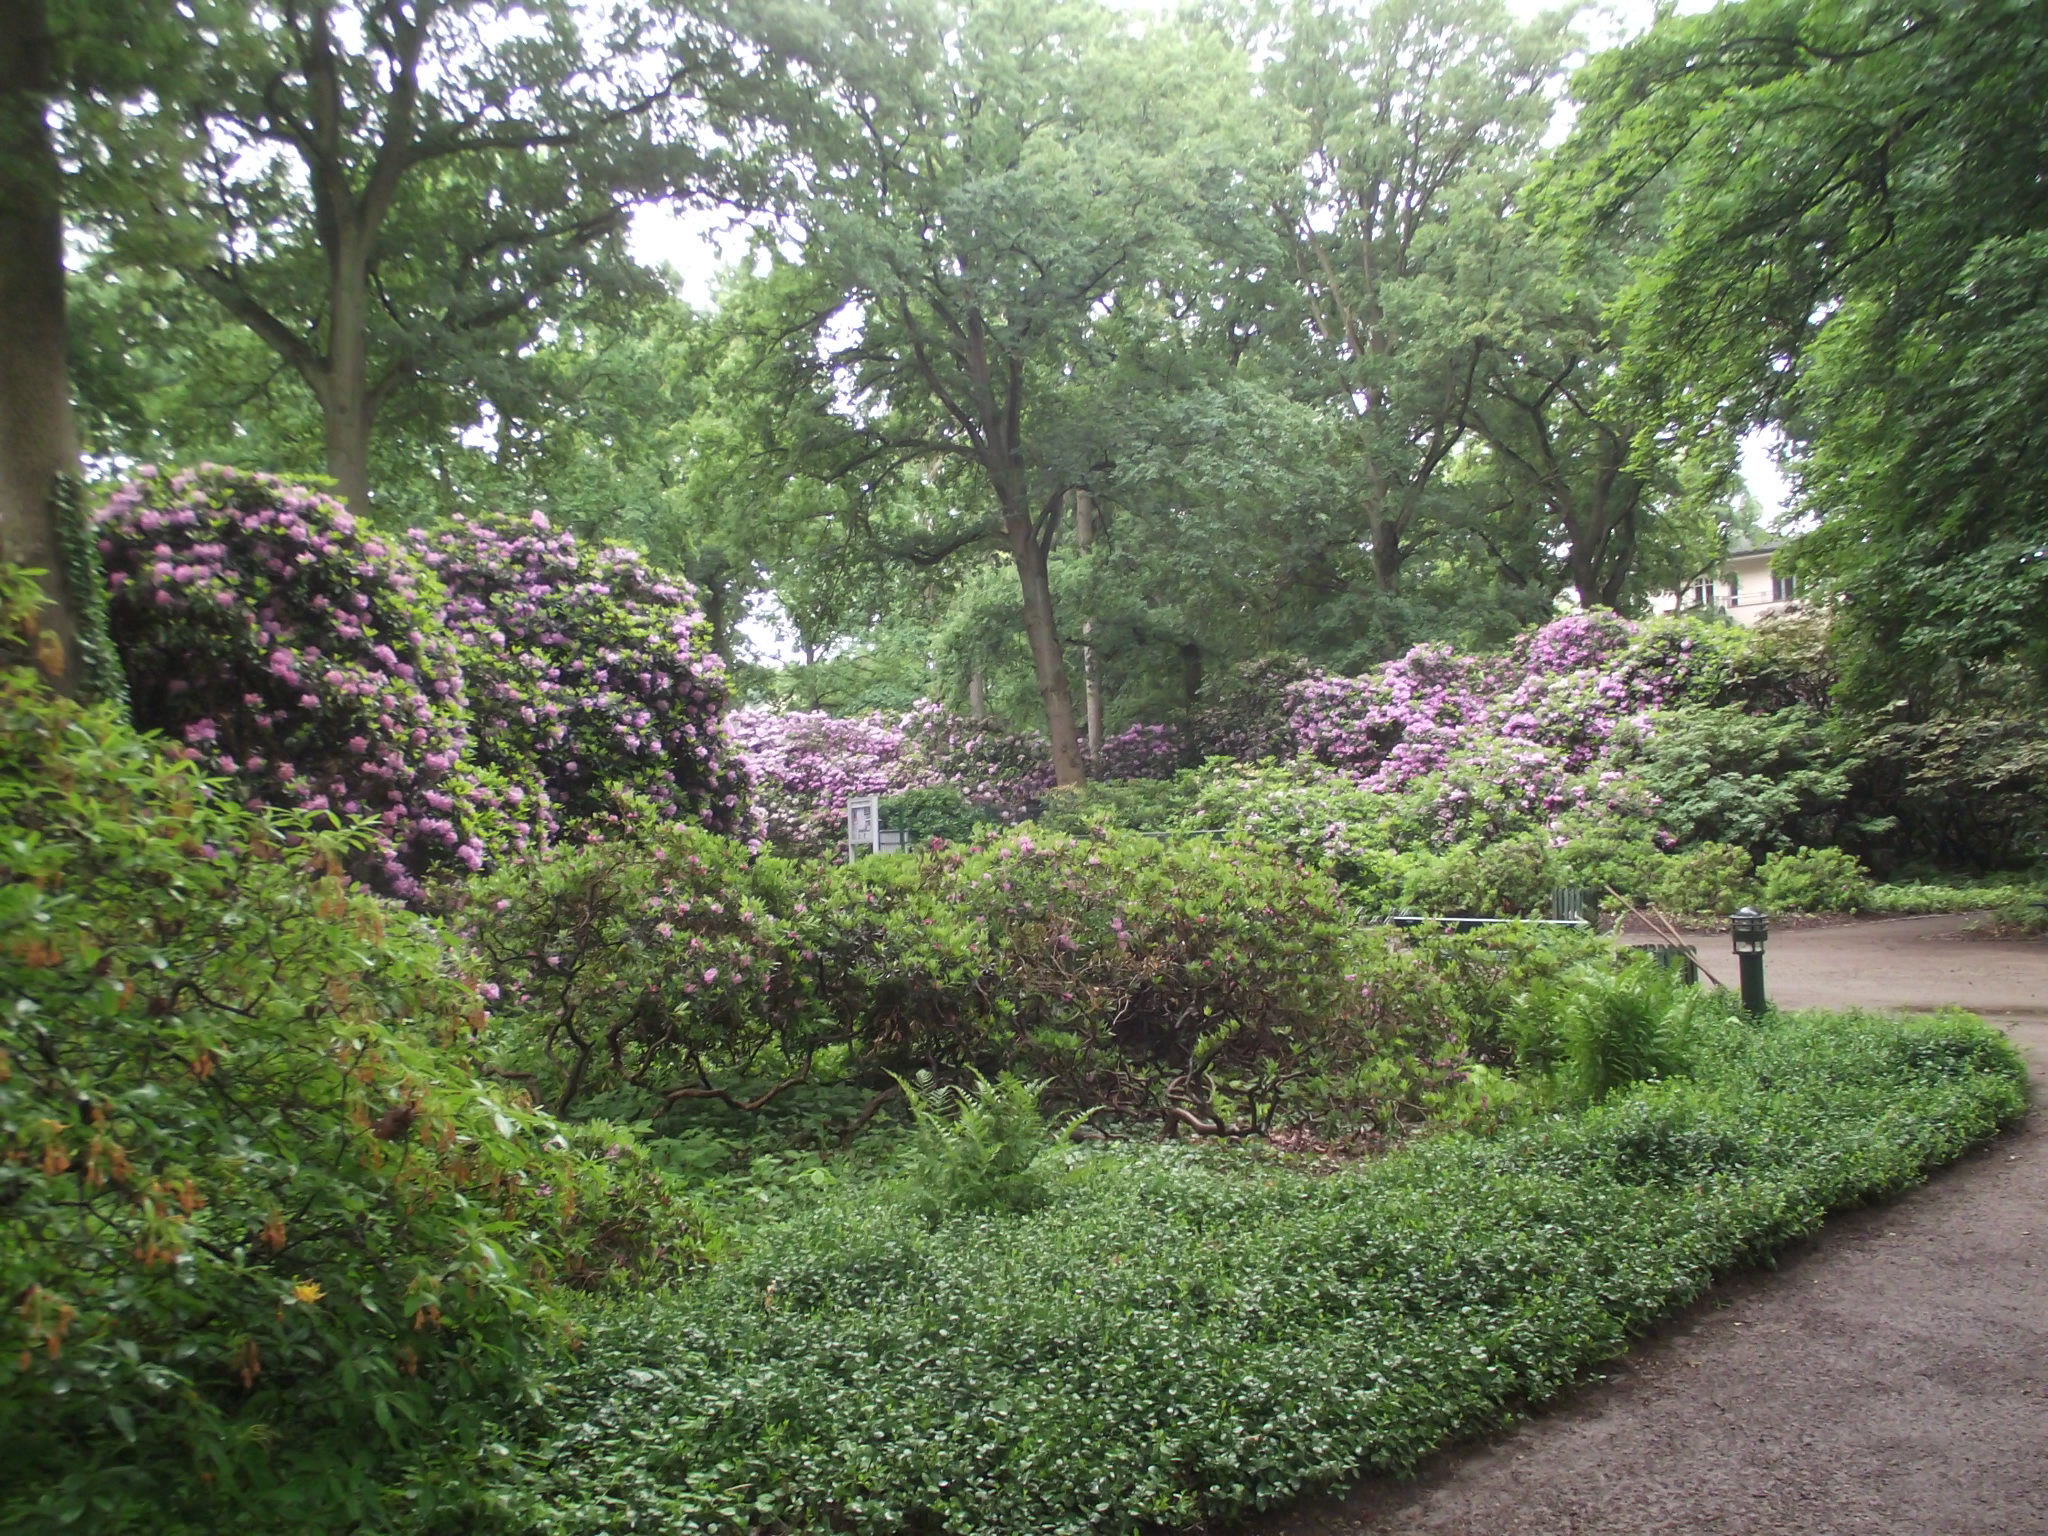 Rhododendron-Park Bremen